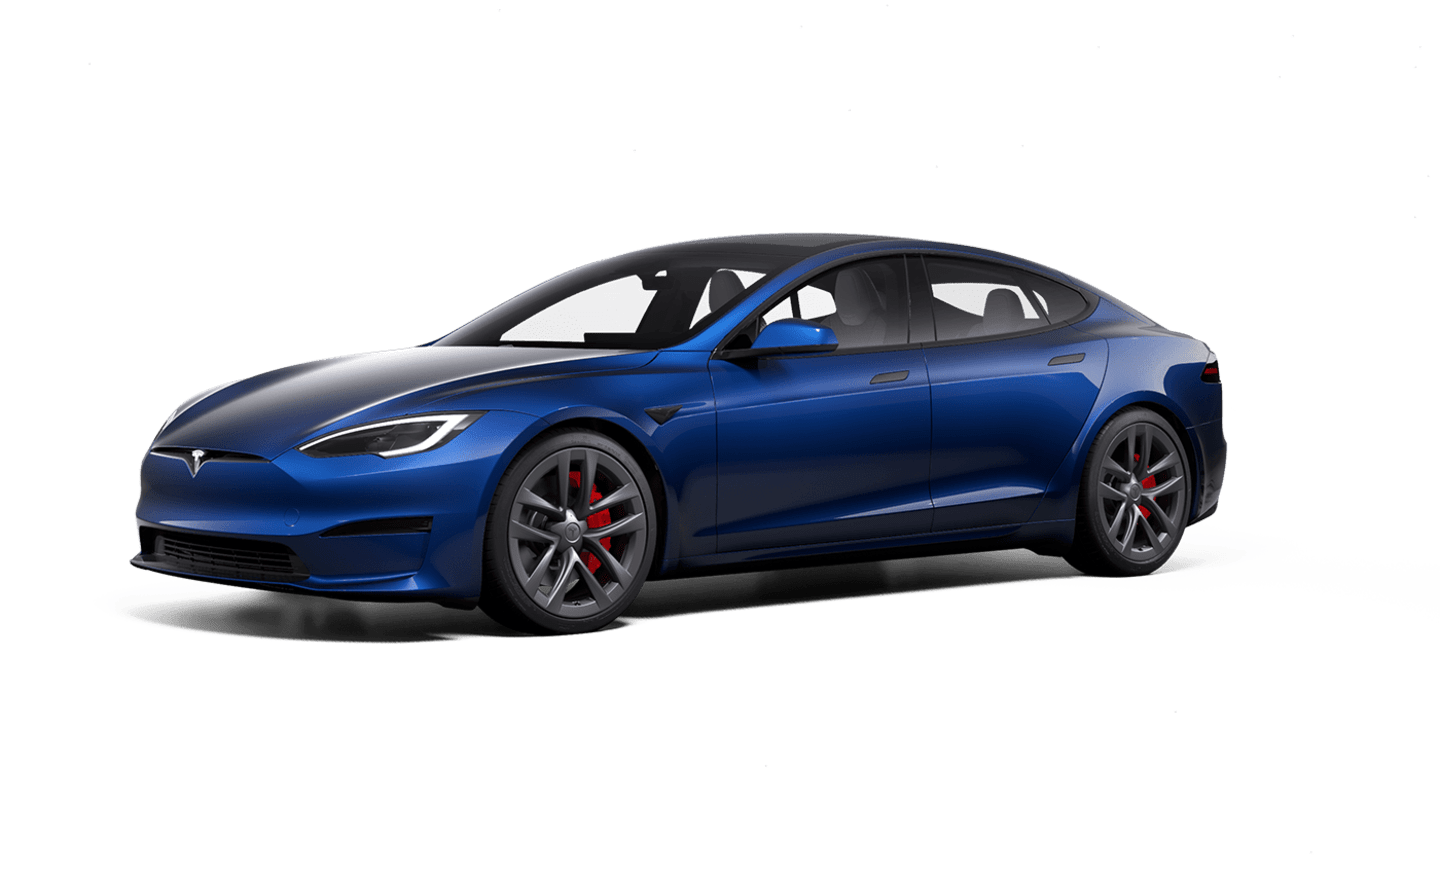 Malaise Kijker Deens Autos eléctricos nuevos y usados | Tesla México